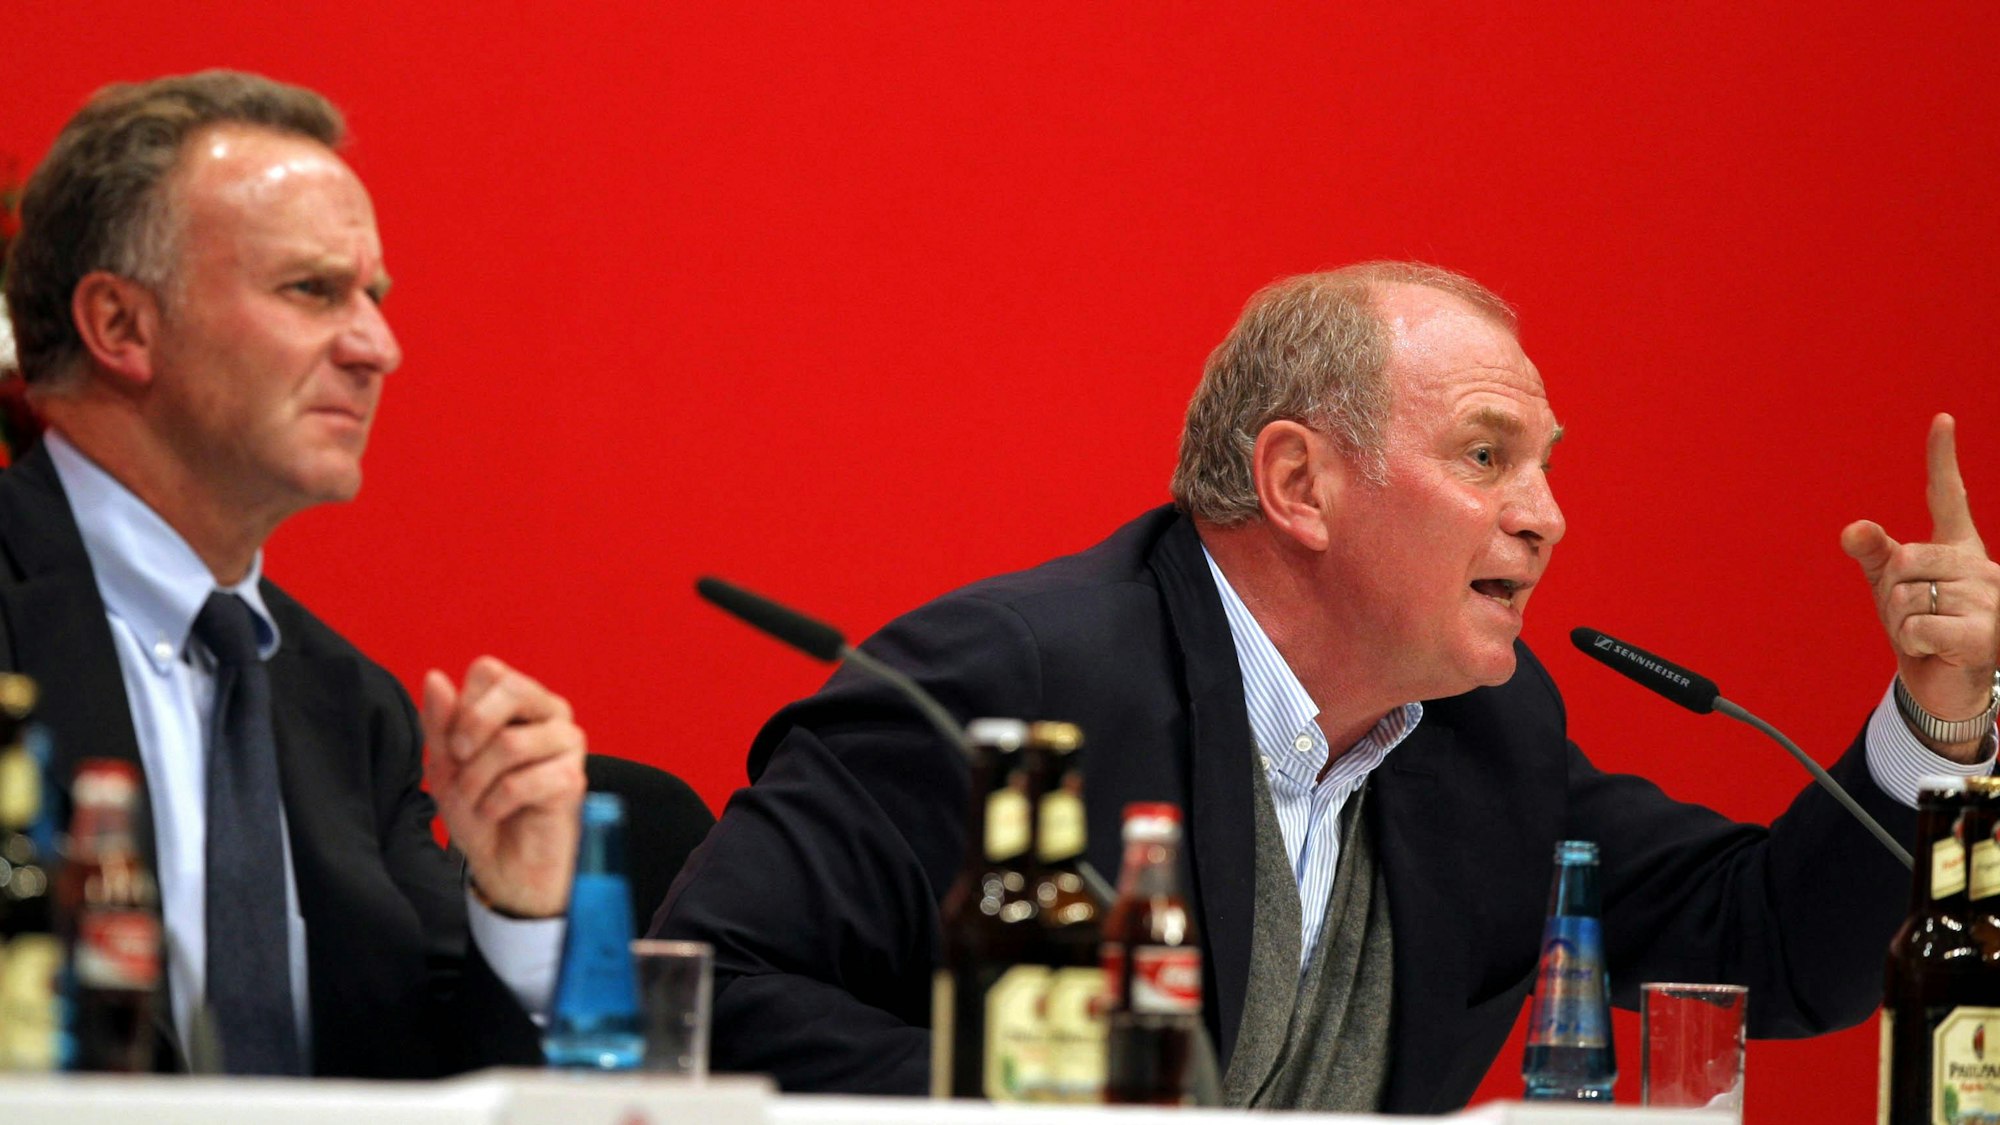 Rummenigge sitzt links neben dem wütenden Hoeneß auf der Bühne bei der Jahreshauptversammlung im Jahr 2007.